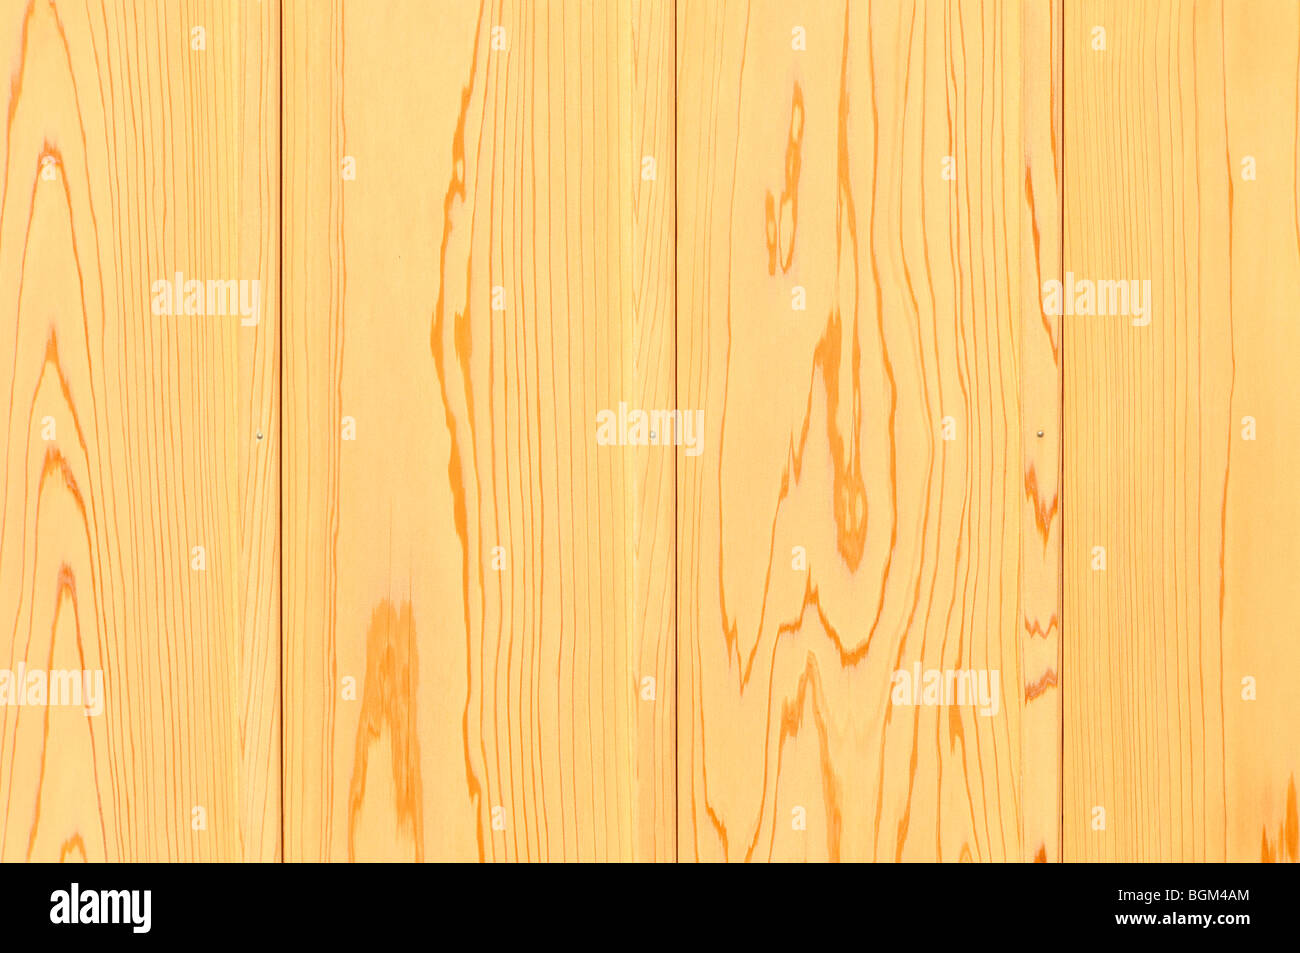 Les planches de bois de cèdre japonais Banque D'Images